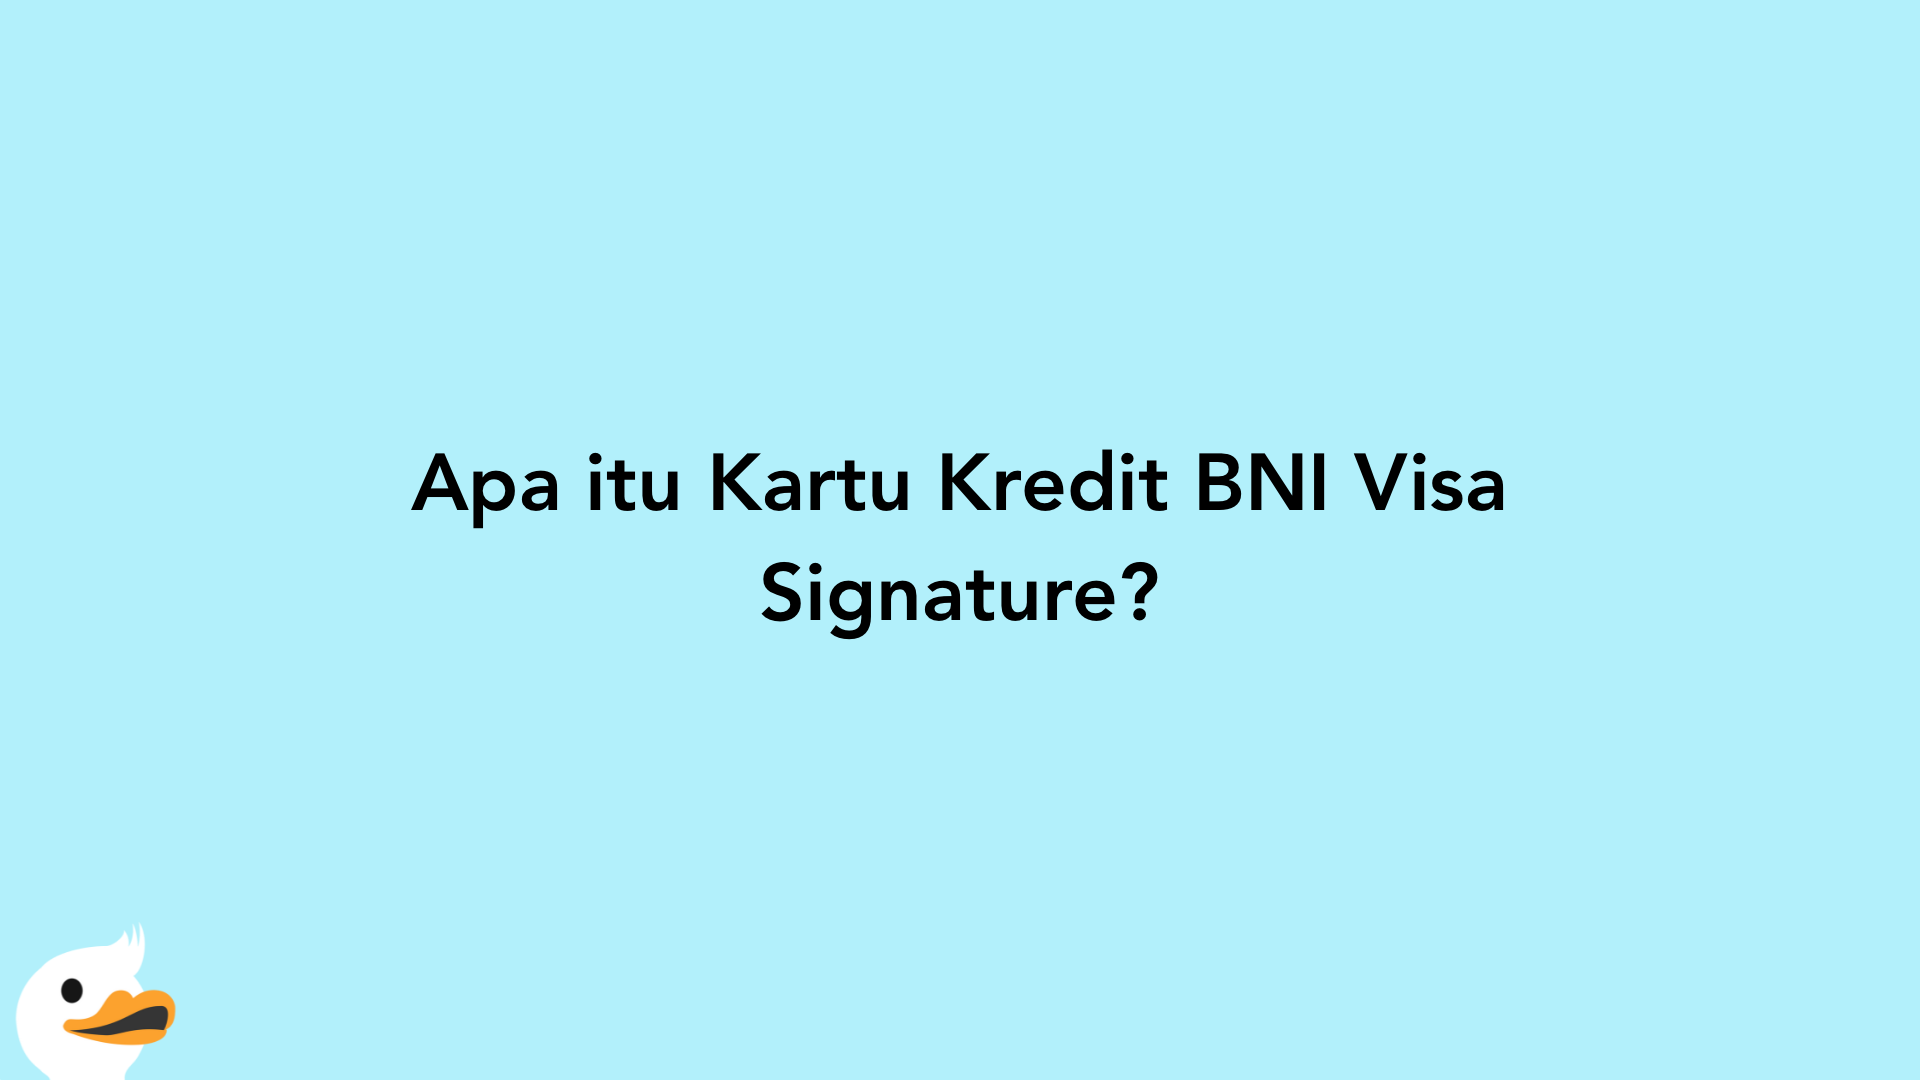 Apa itu Kartu Kredit BNI Visa Signature?